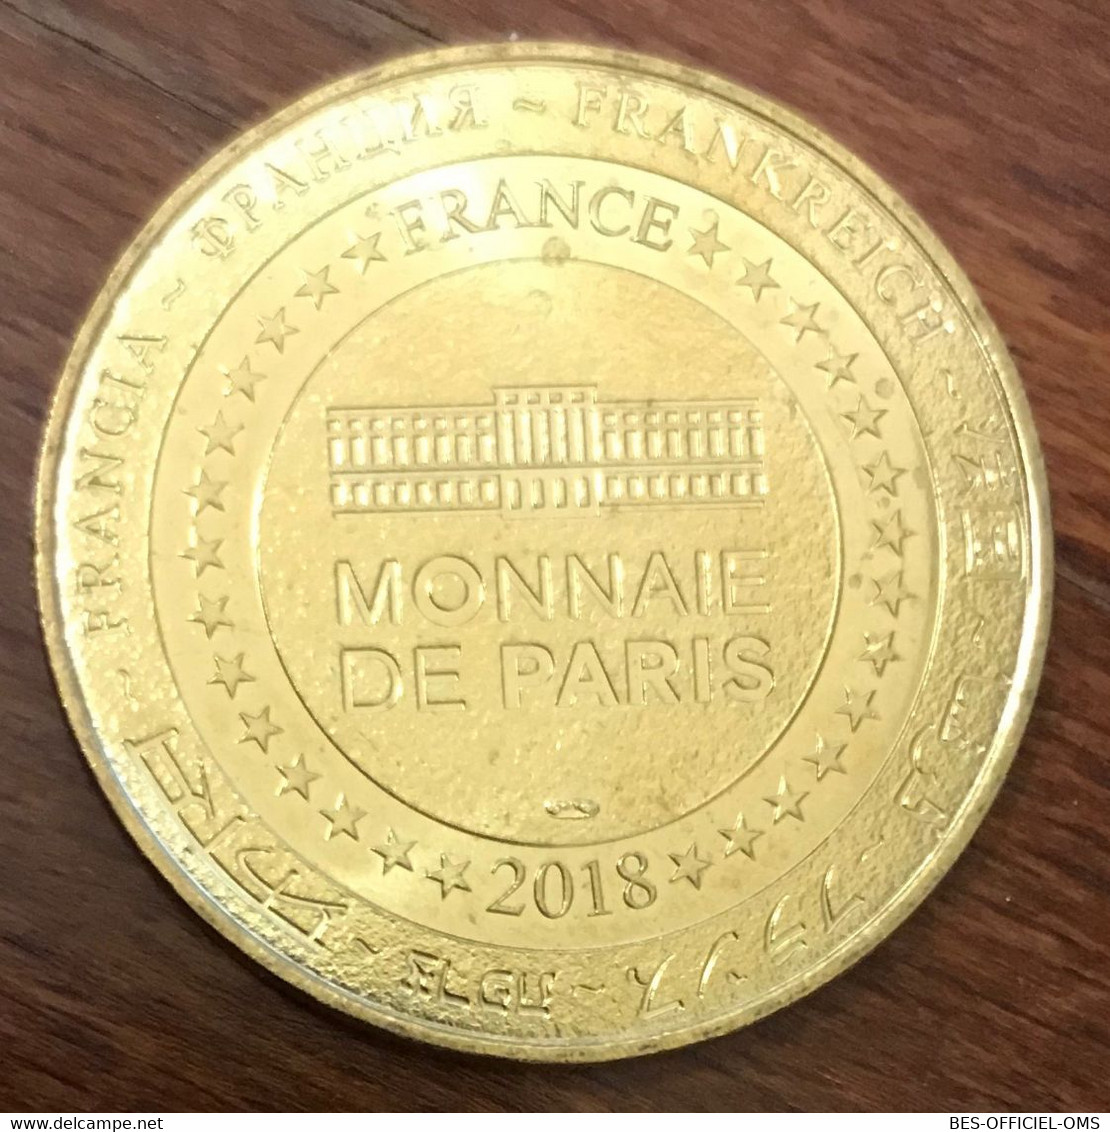 29 BREST OCÉANOPOLIS POISSON NAPOLEON MDP 2018 MÉDAILLE MONNAIE DE PARIS JETON TOURISTIQUE MEDALS COINS TOKENS - 2018